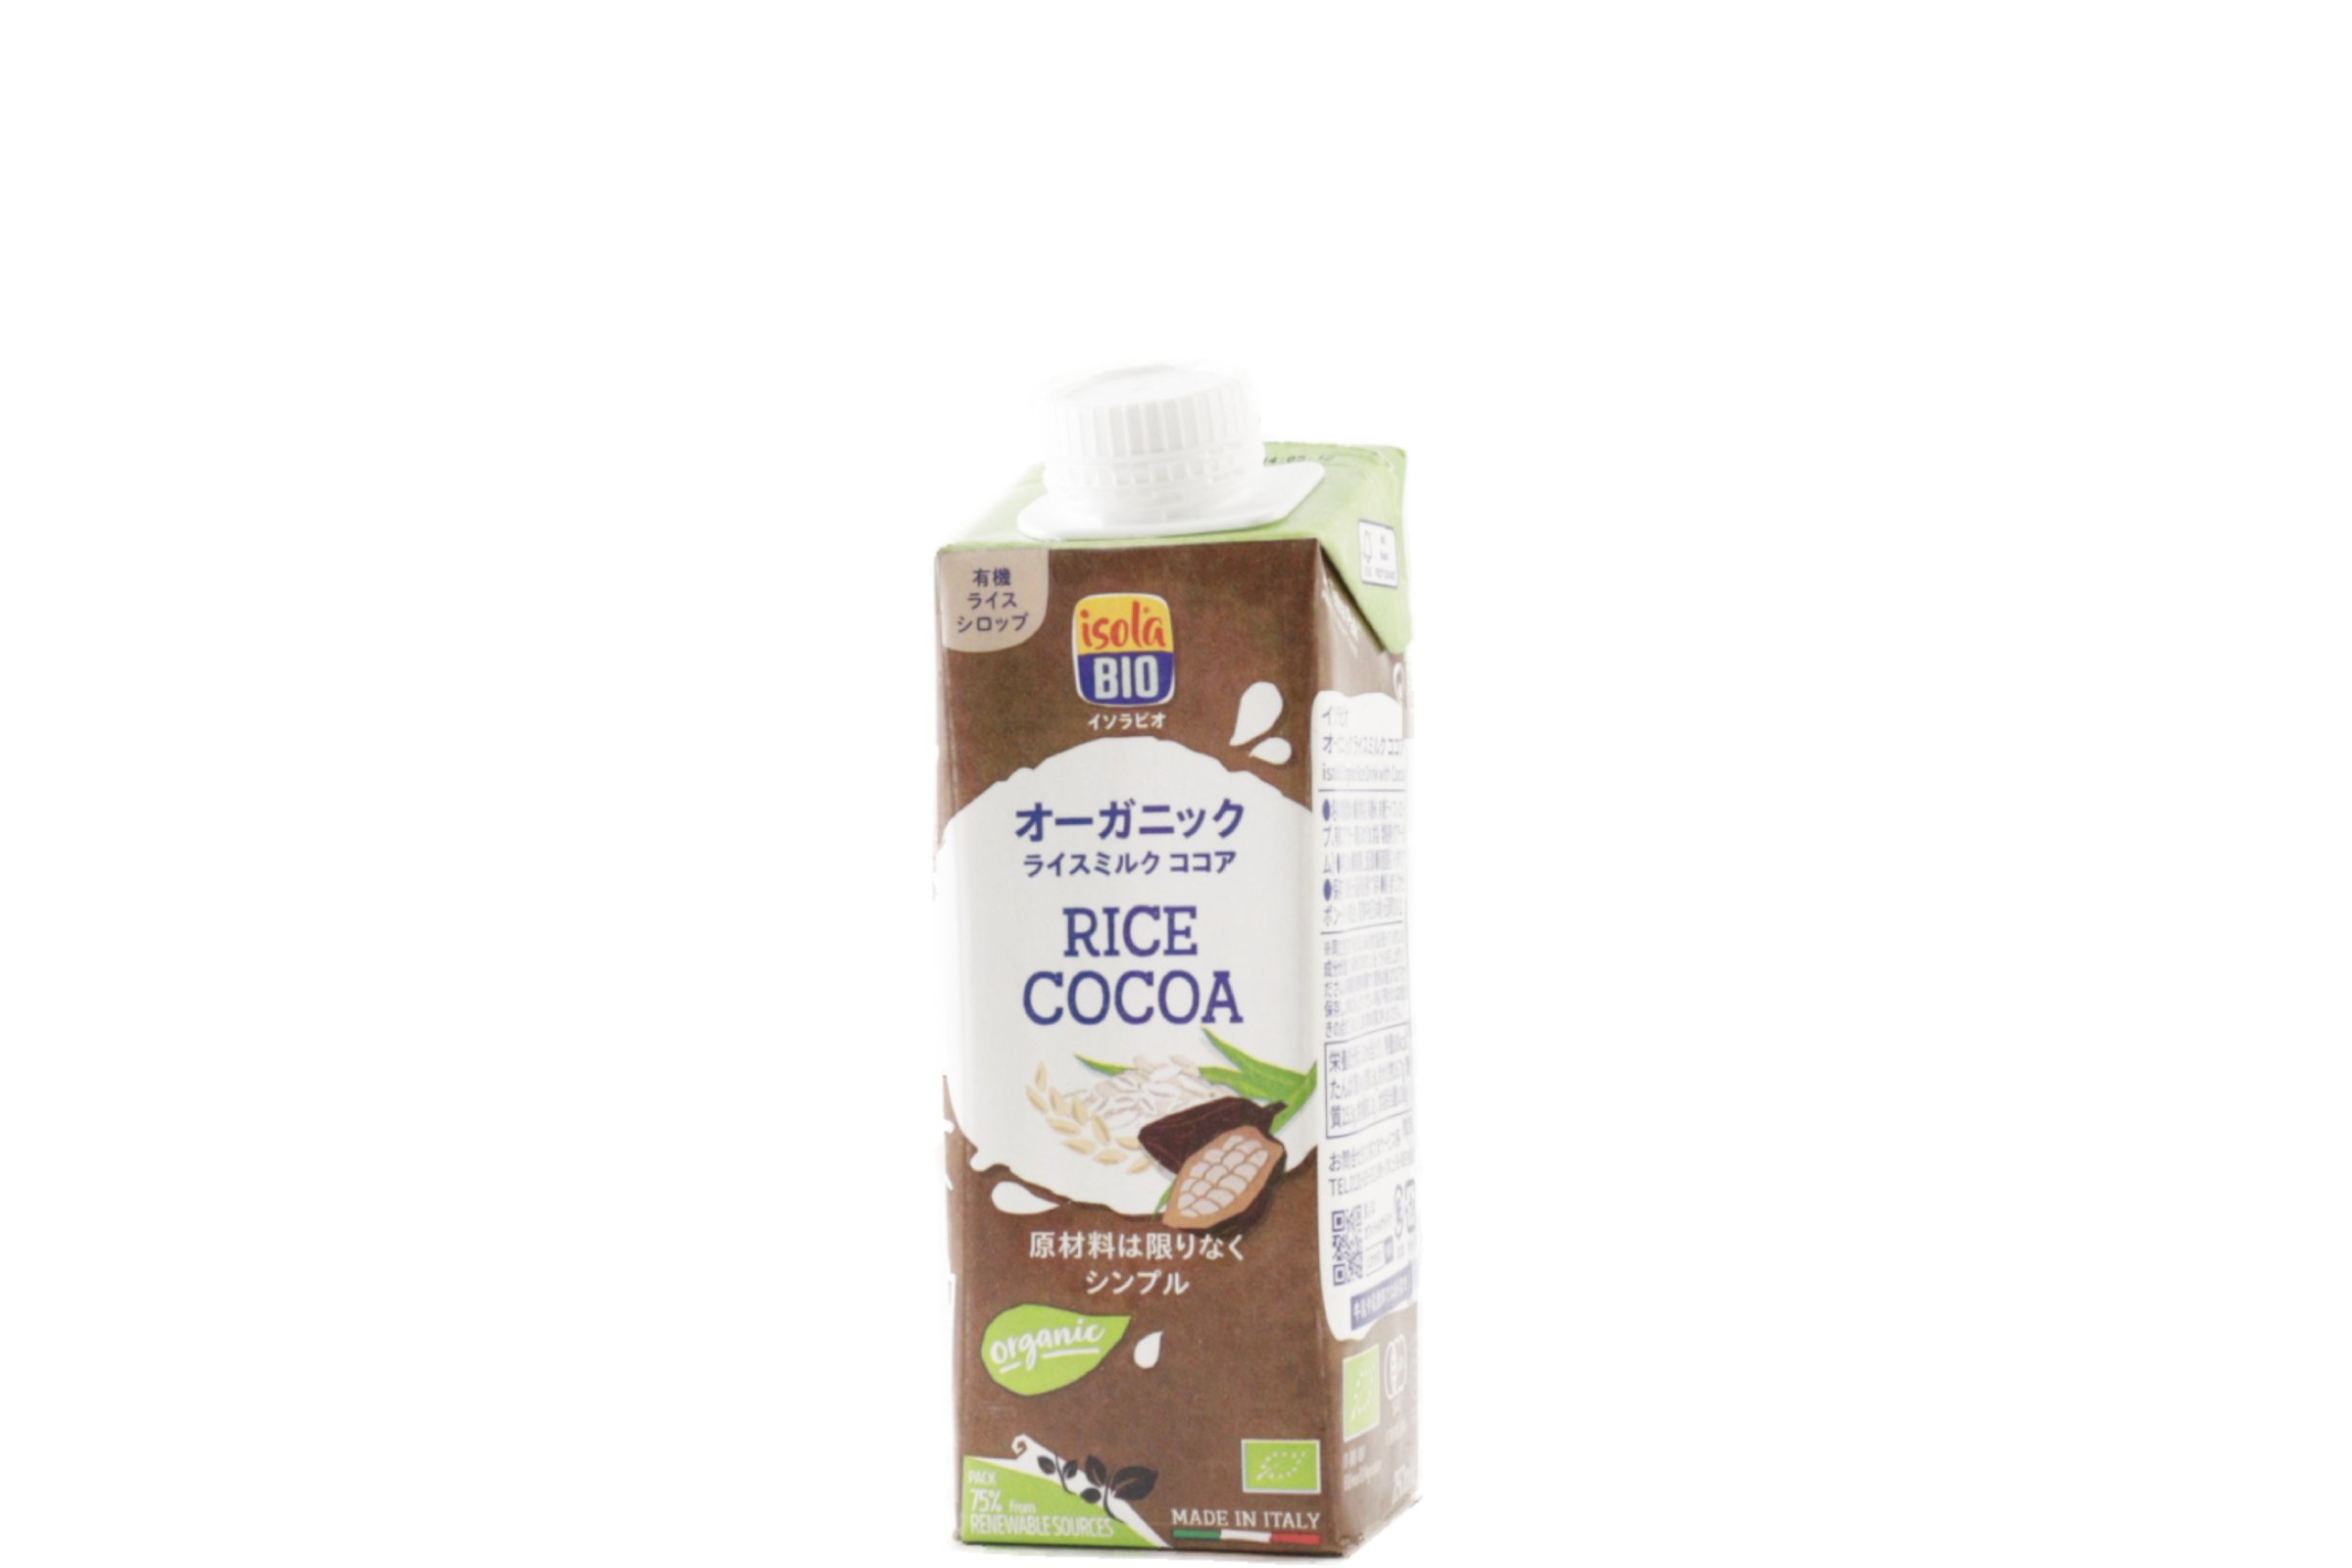 オーガニック ライスミルク ココア 250ml/1ケース24本入り【ポイント2倍】